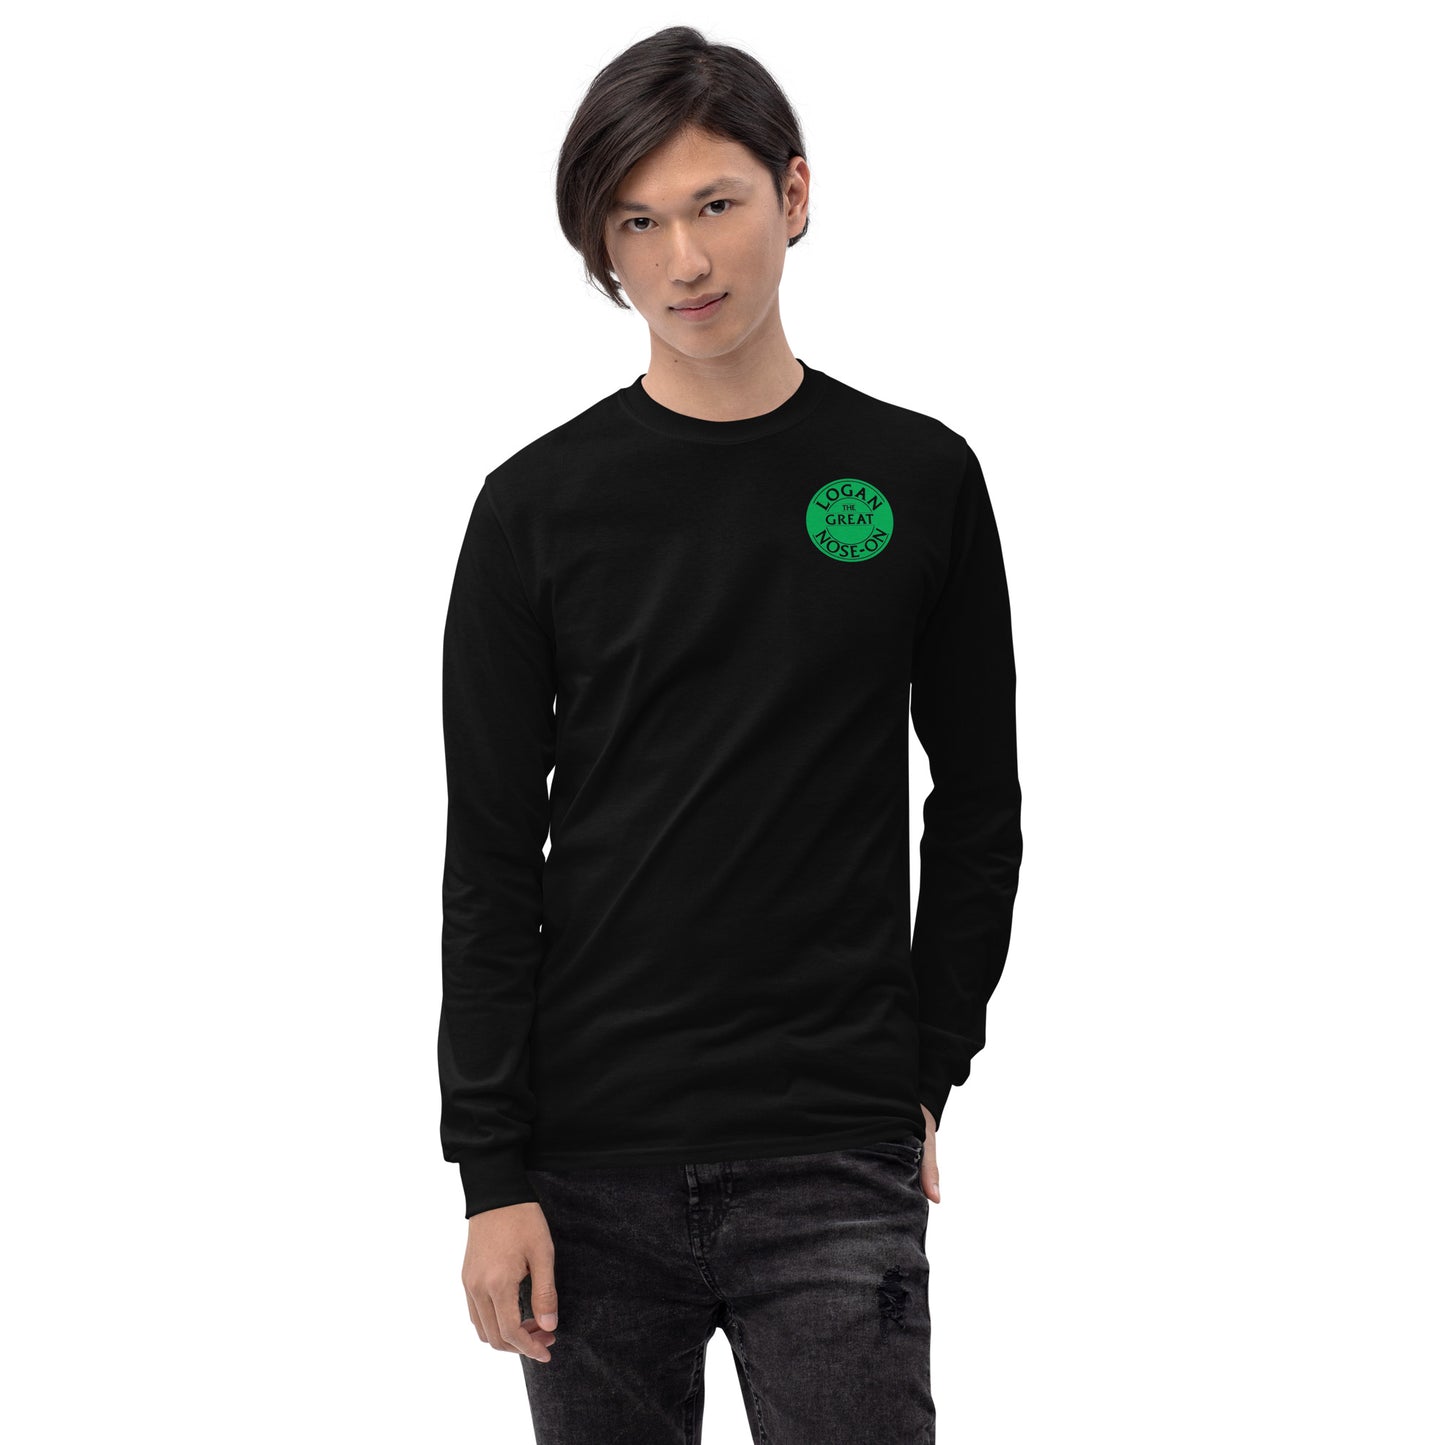 Black Unisex Long Sleeve Shirt logo front and back